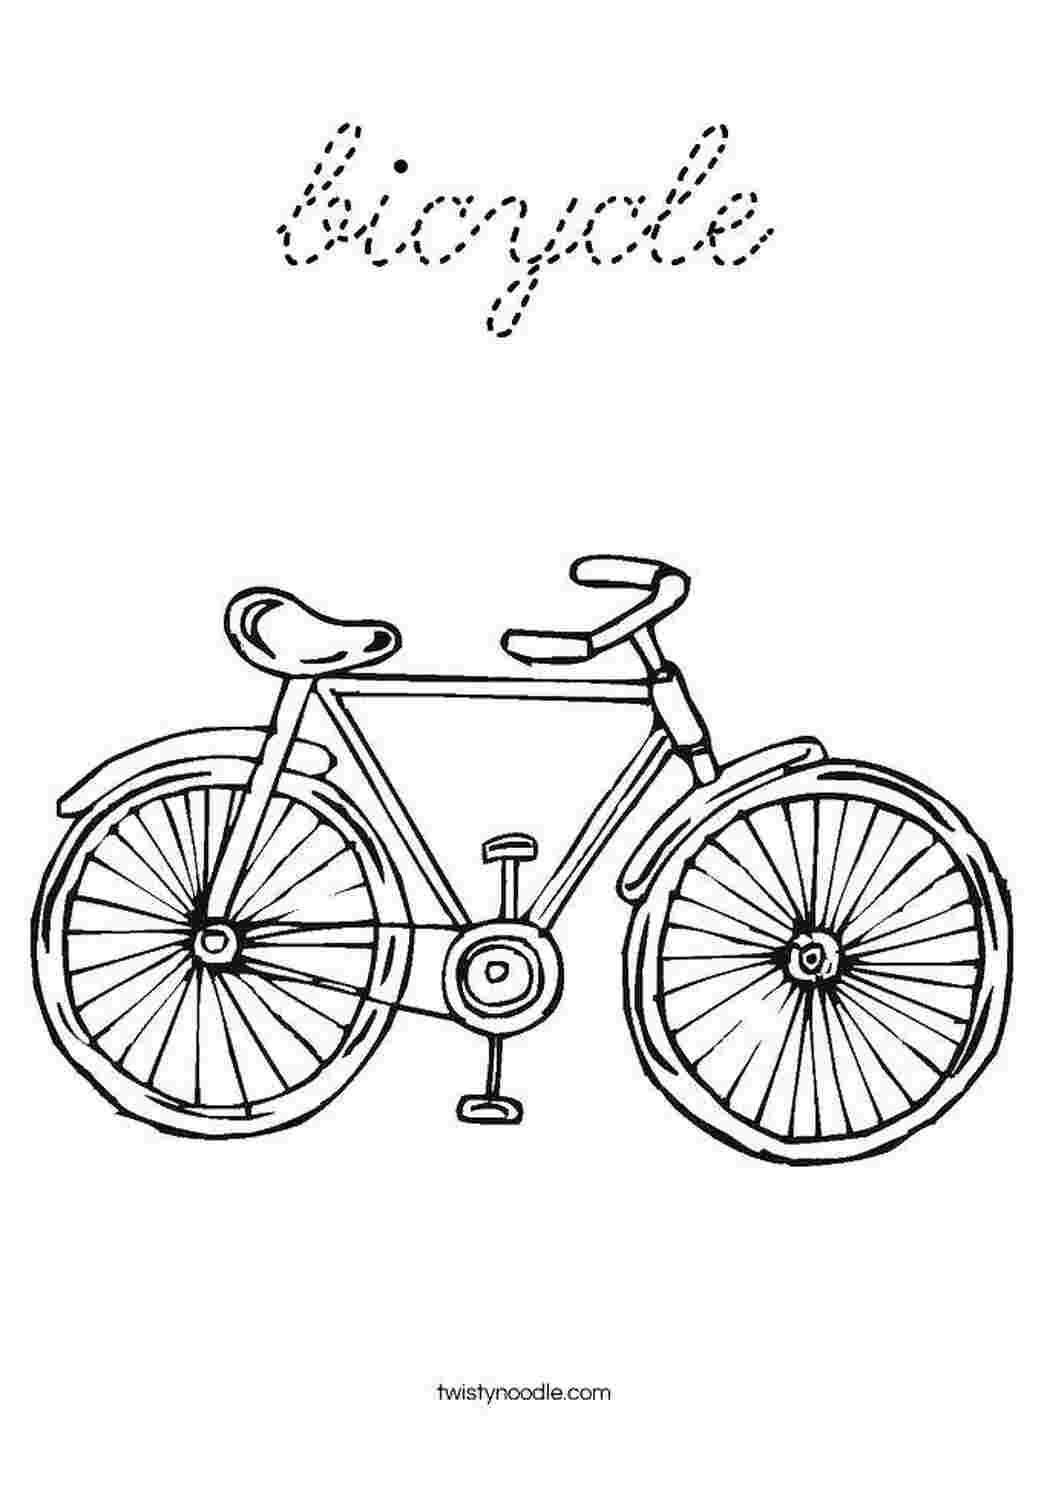 Велосипед рисунок раскрашенный